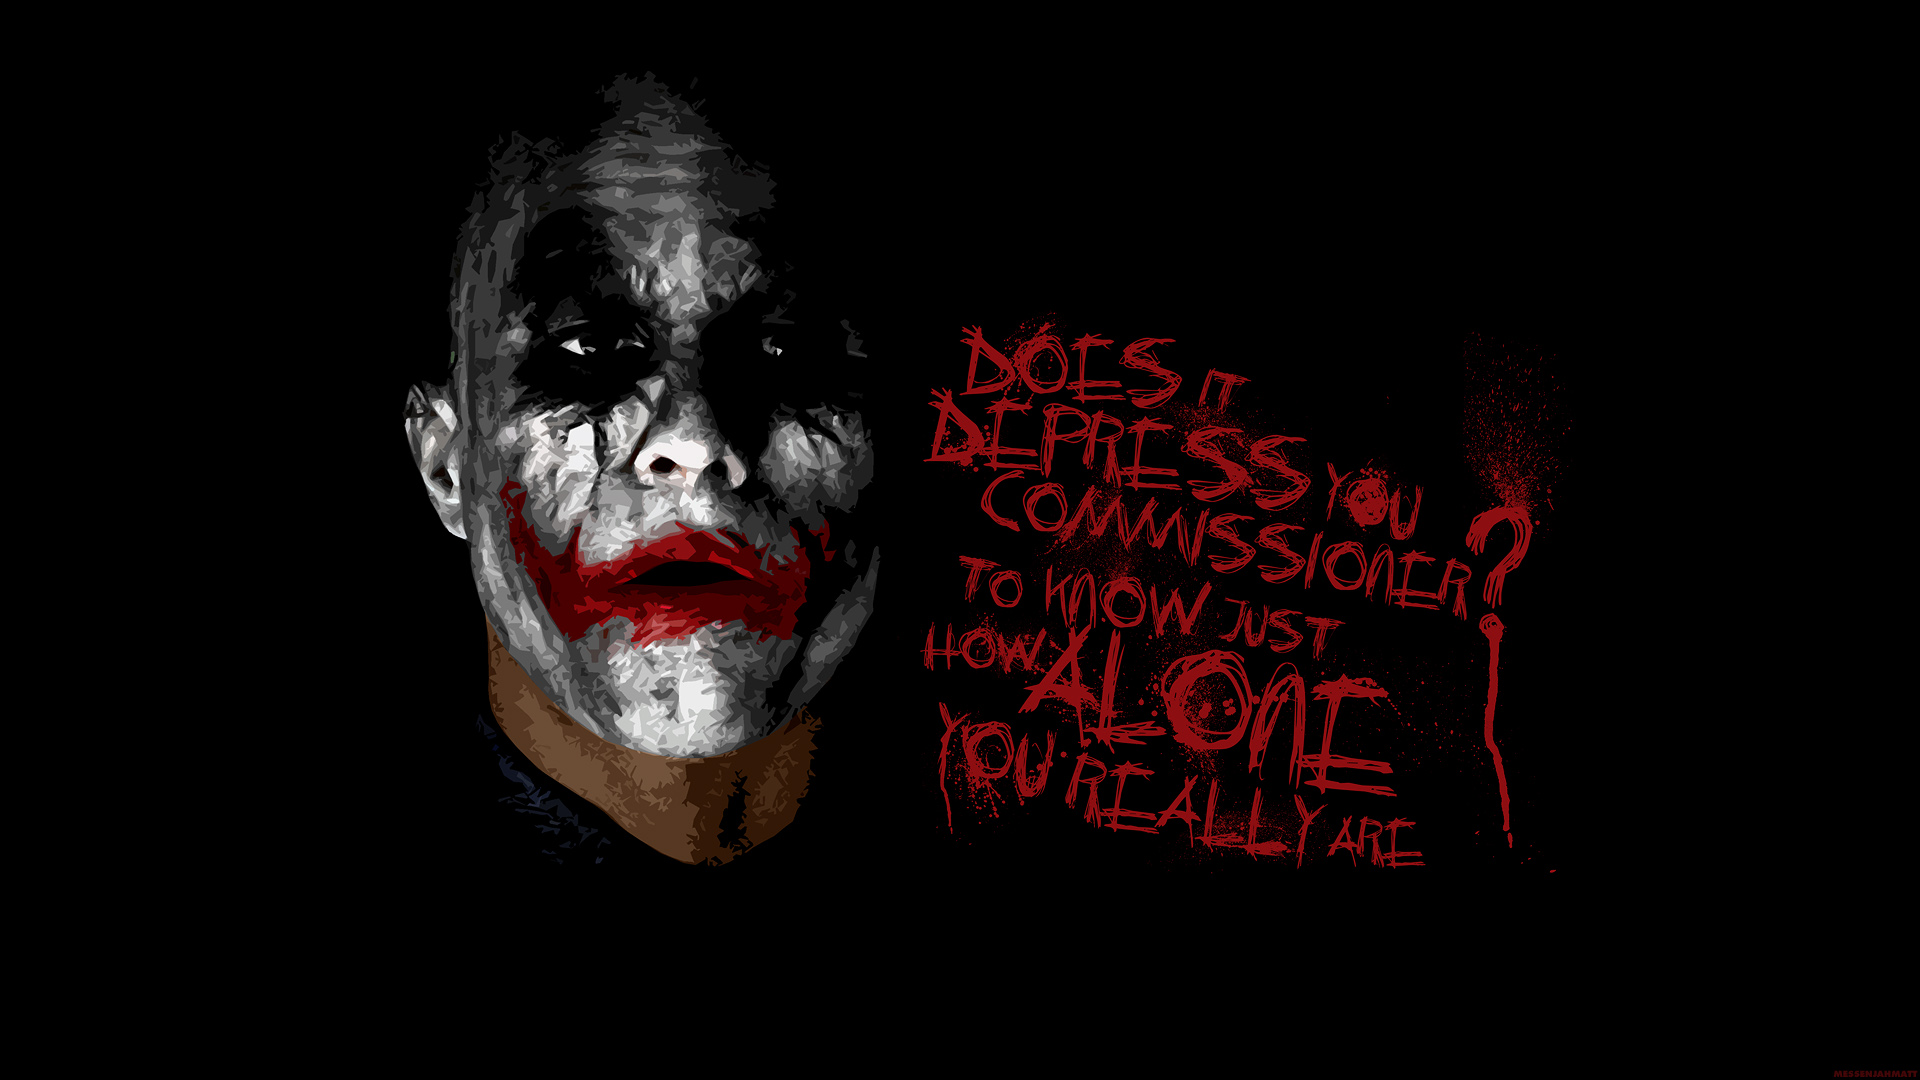 [48+] The Joker Wallpaper 1080p - WallpaperSafari